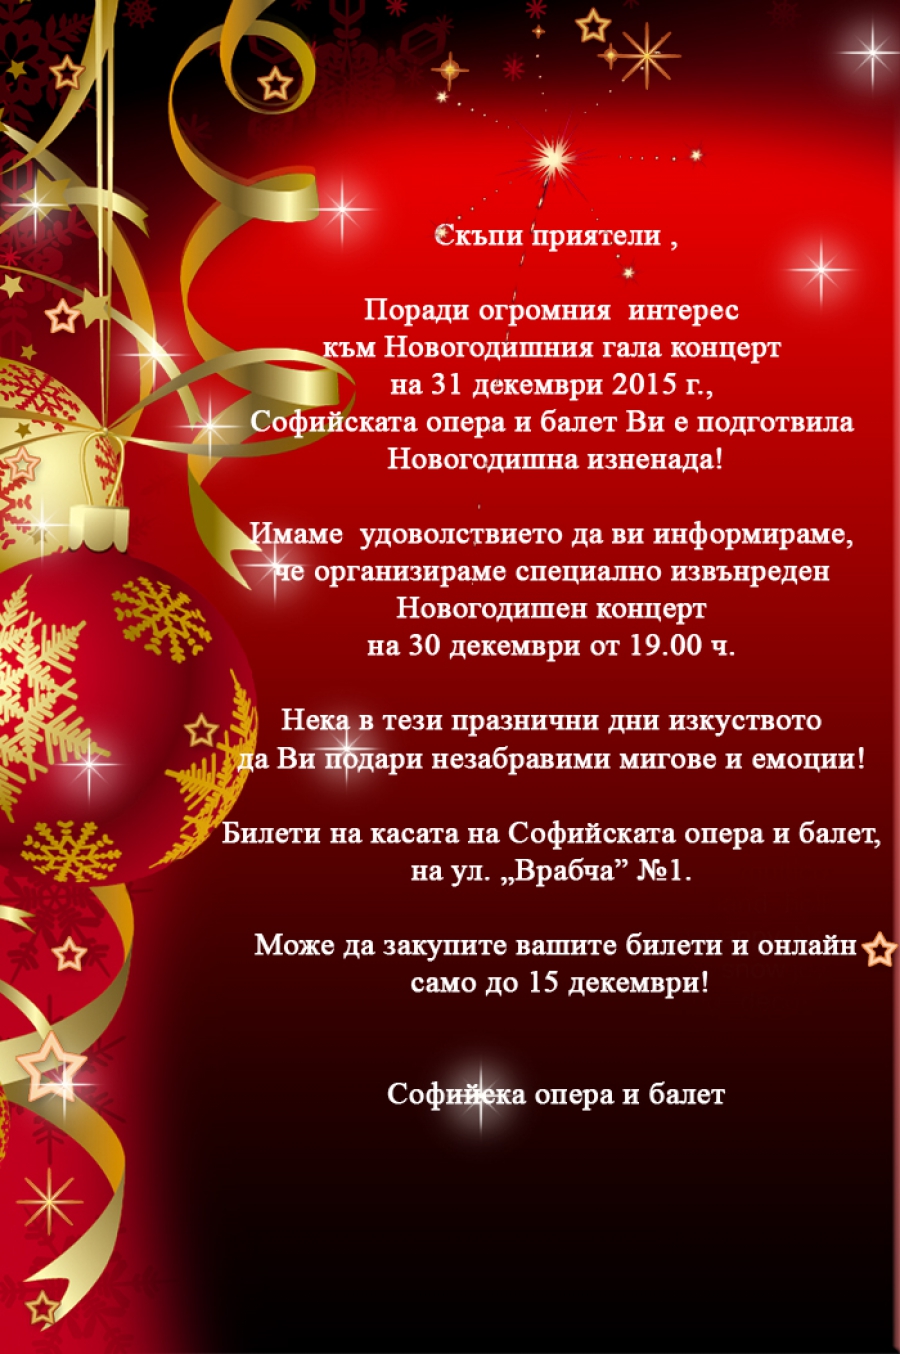 Извънреден Новогодишен концерт на 30 декември от 19.00 ч.